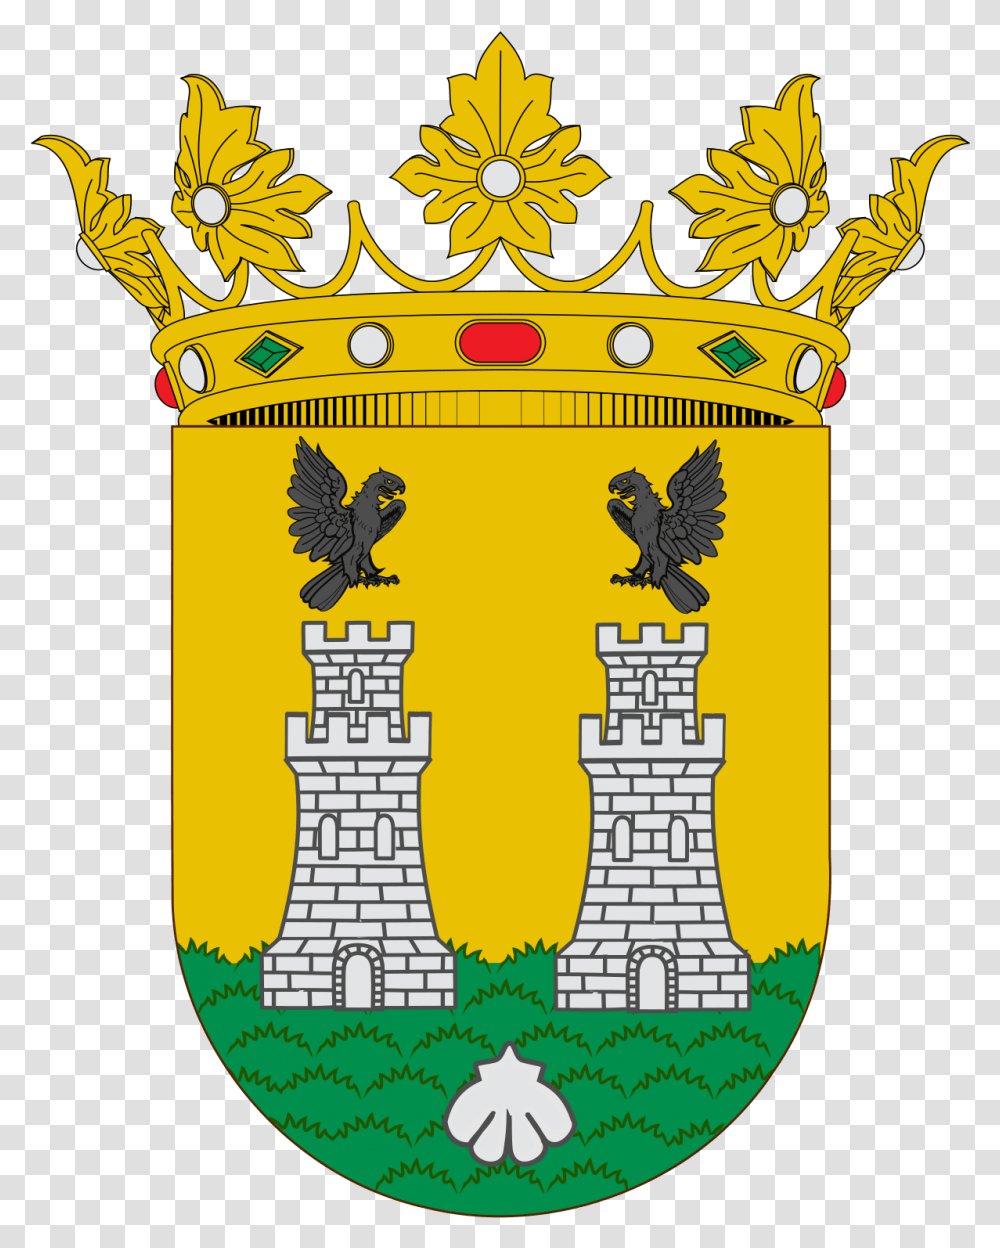 Escudo De Jose Antonio Primo De Rivera, Crown, Jewelry, Accessories, Accessory Transparent Png